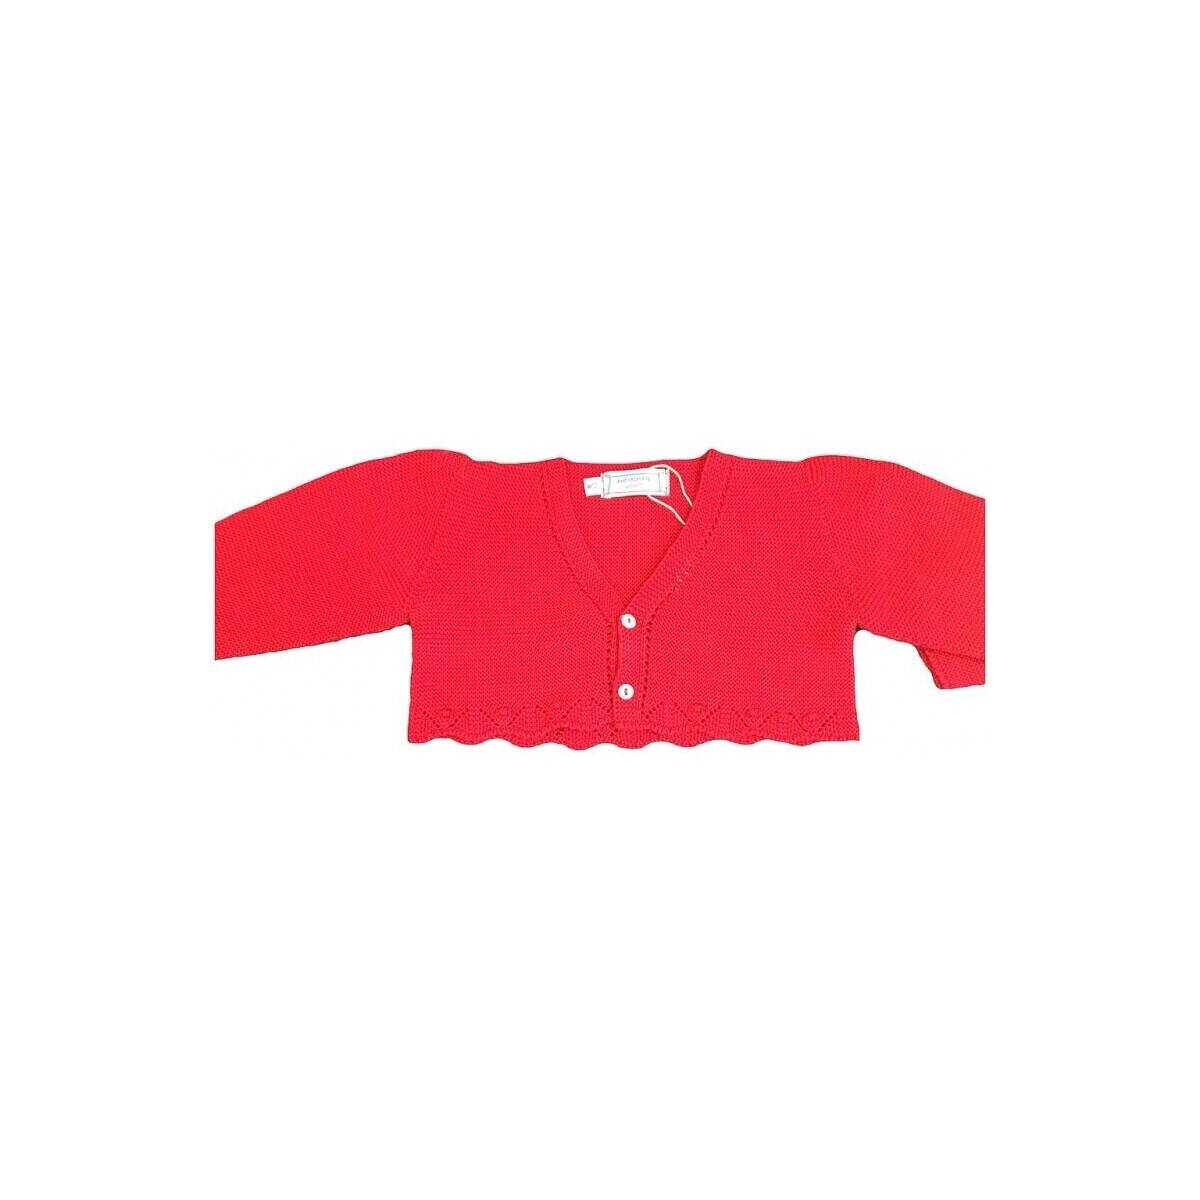 Oblačila Plašči P. Baby 23824-1 Rdeča